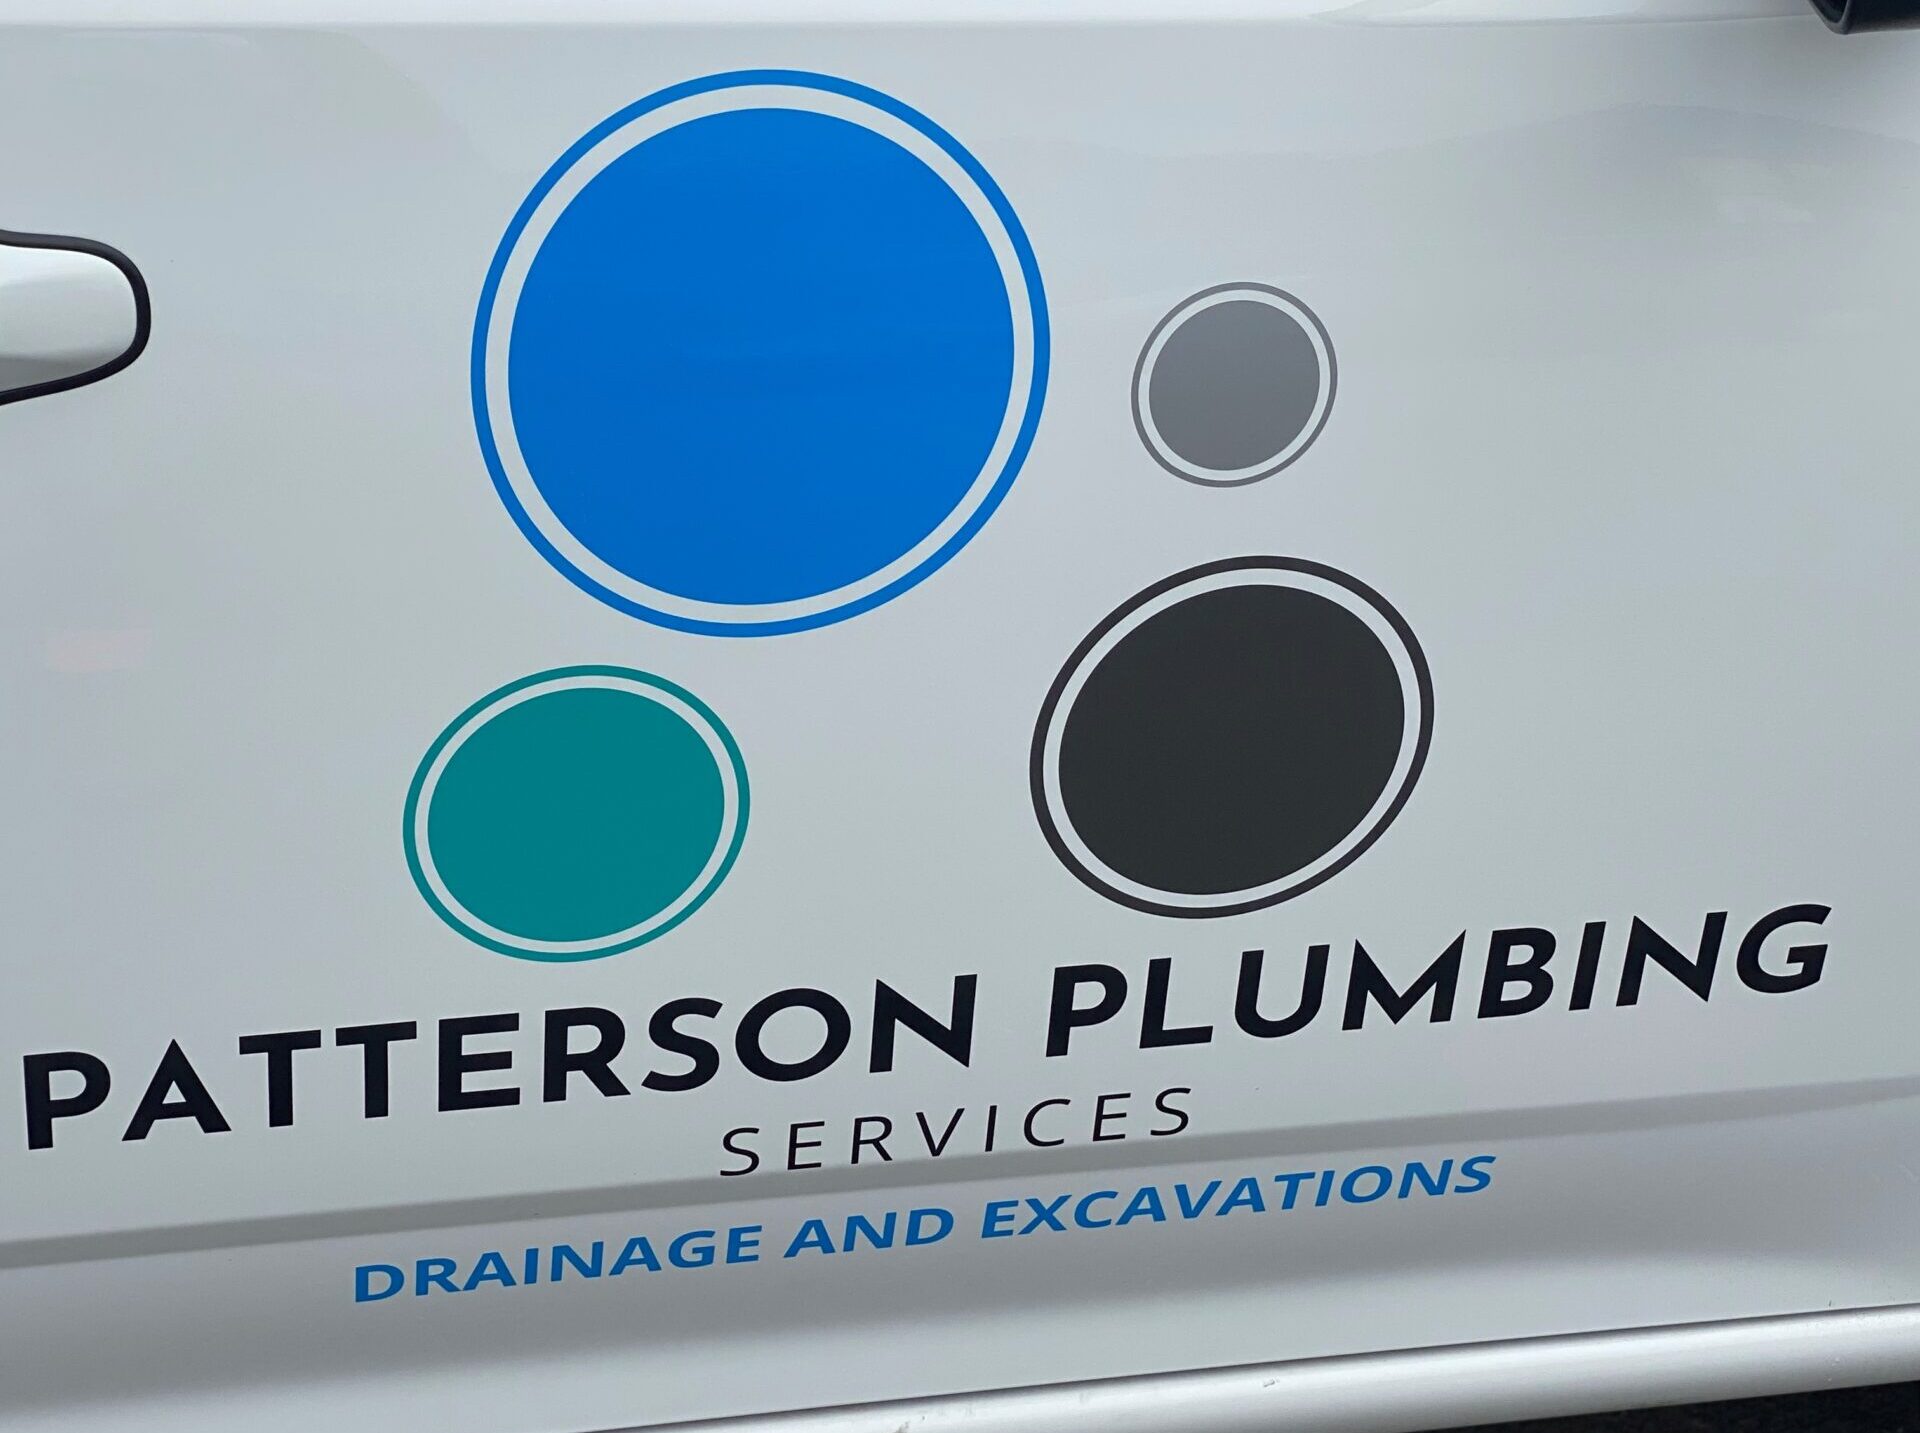 Patterson Plumbing Services Melbourne